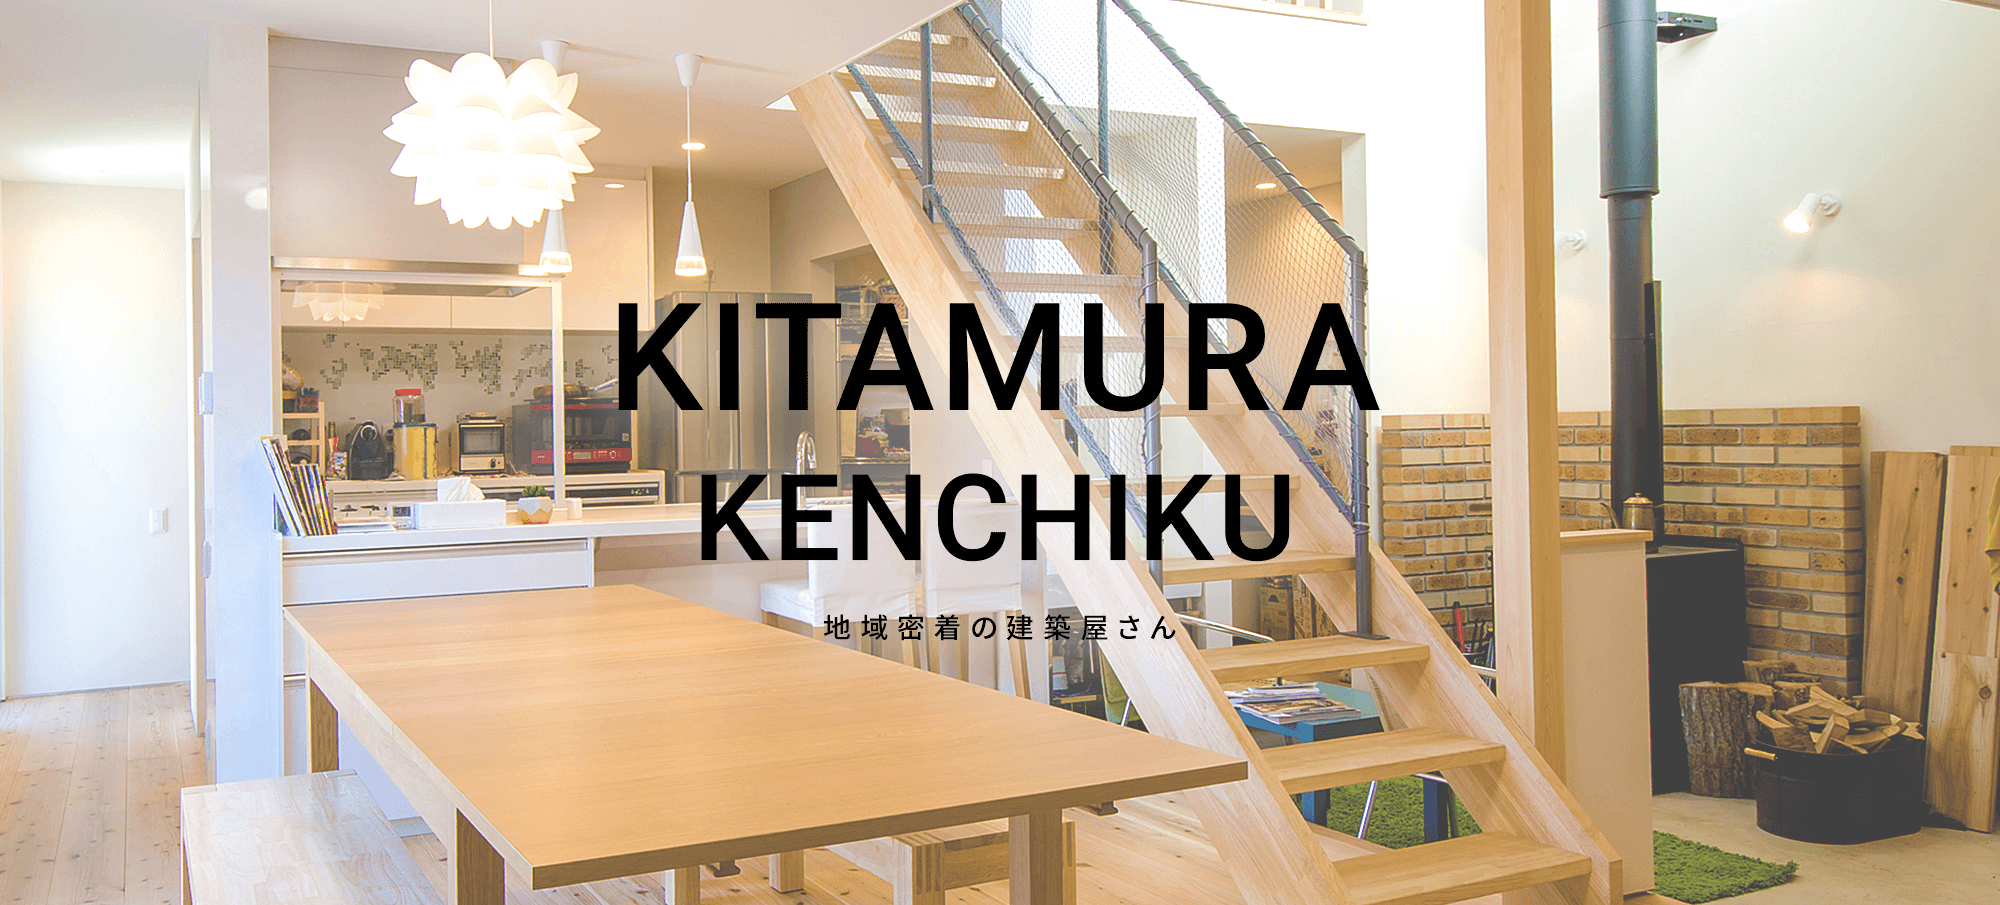 KITAMURA KENCHIKU 地域密着の建築屋さん